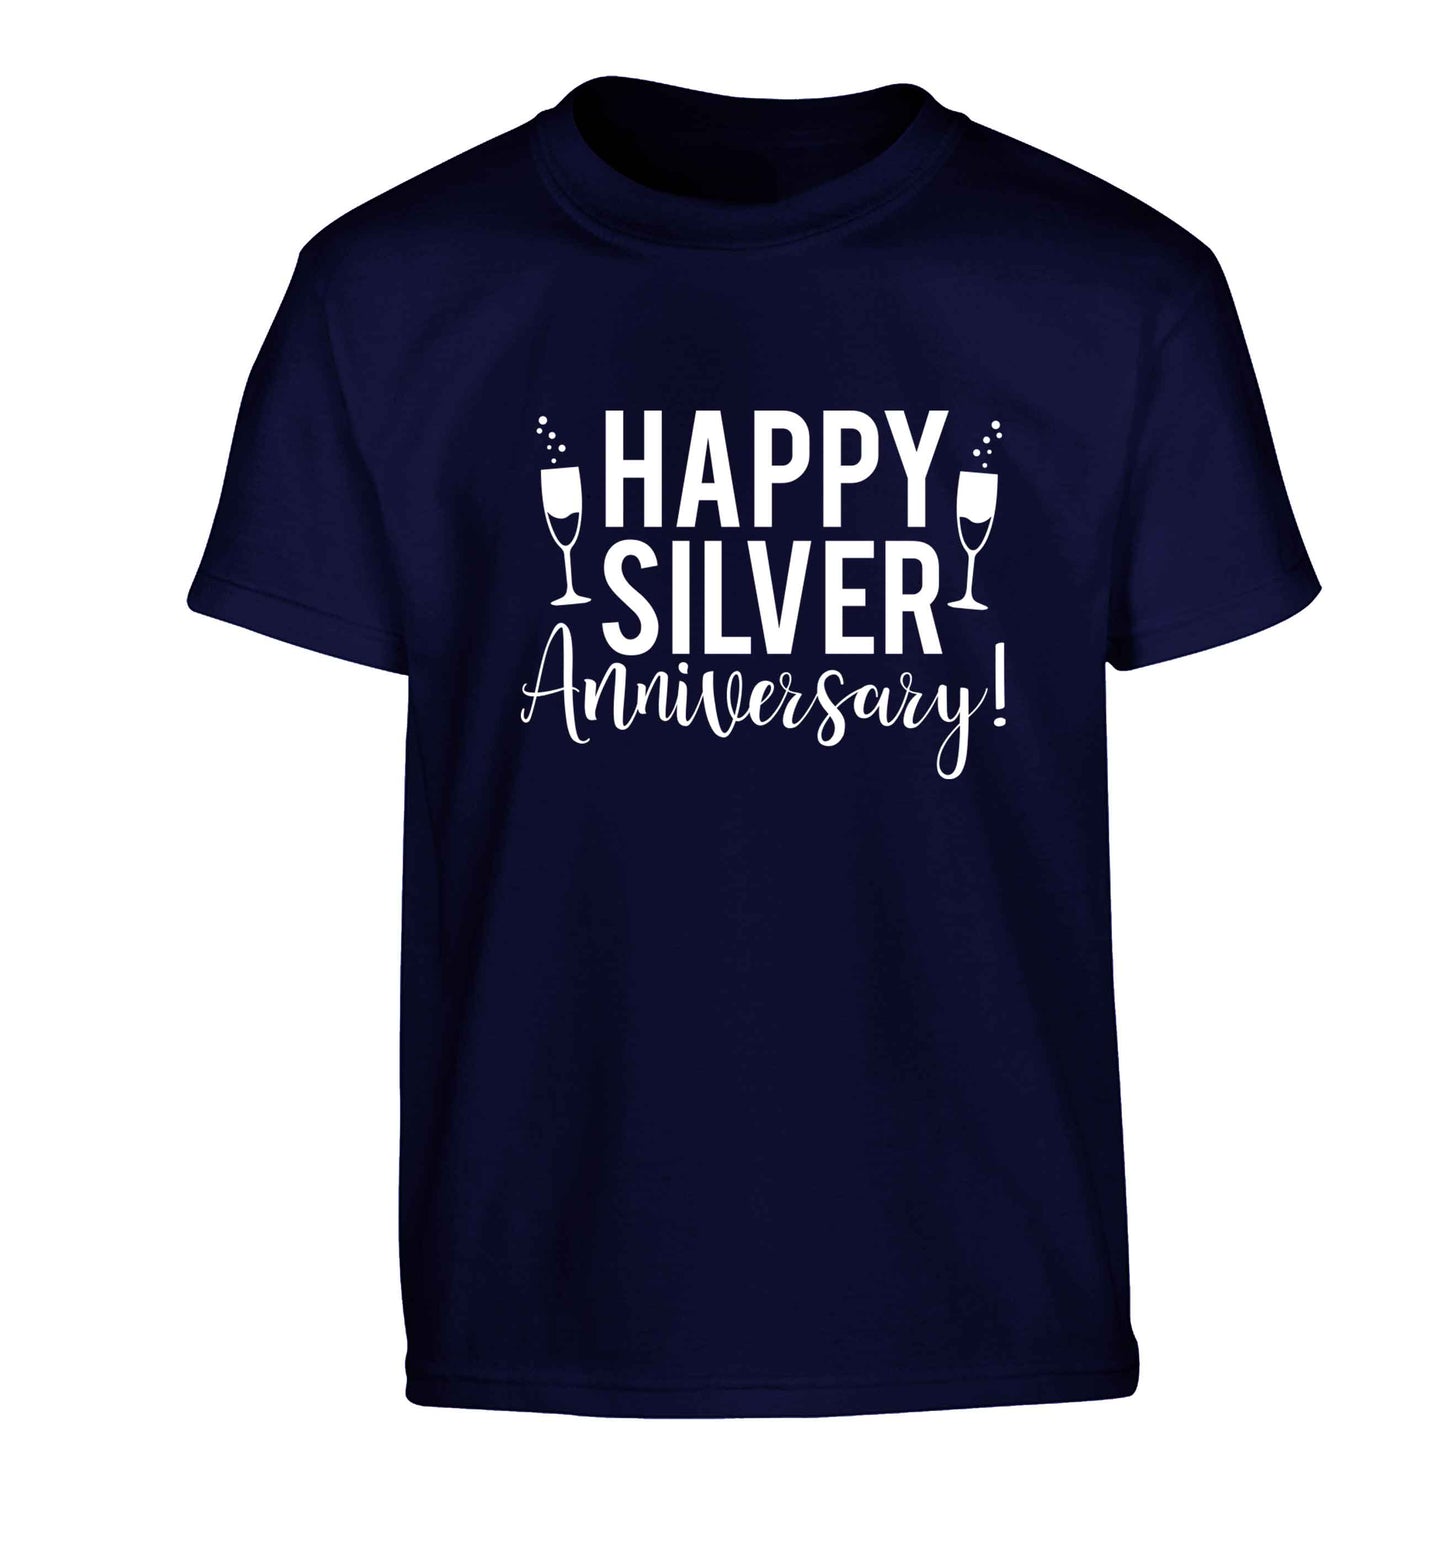 Happy silver anniversary! Children's navy Tshirt 12-13 Years